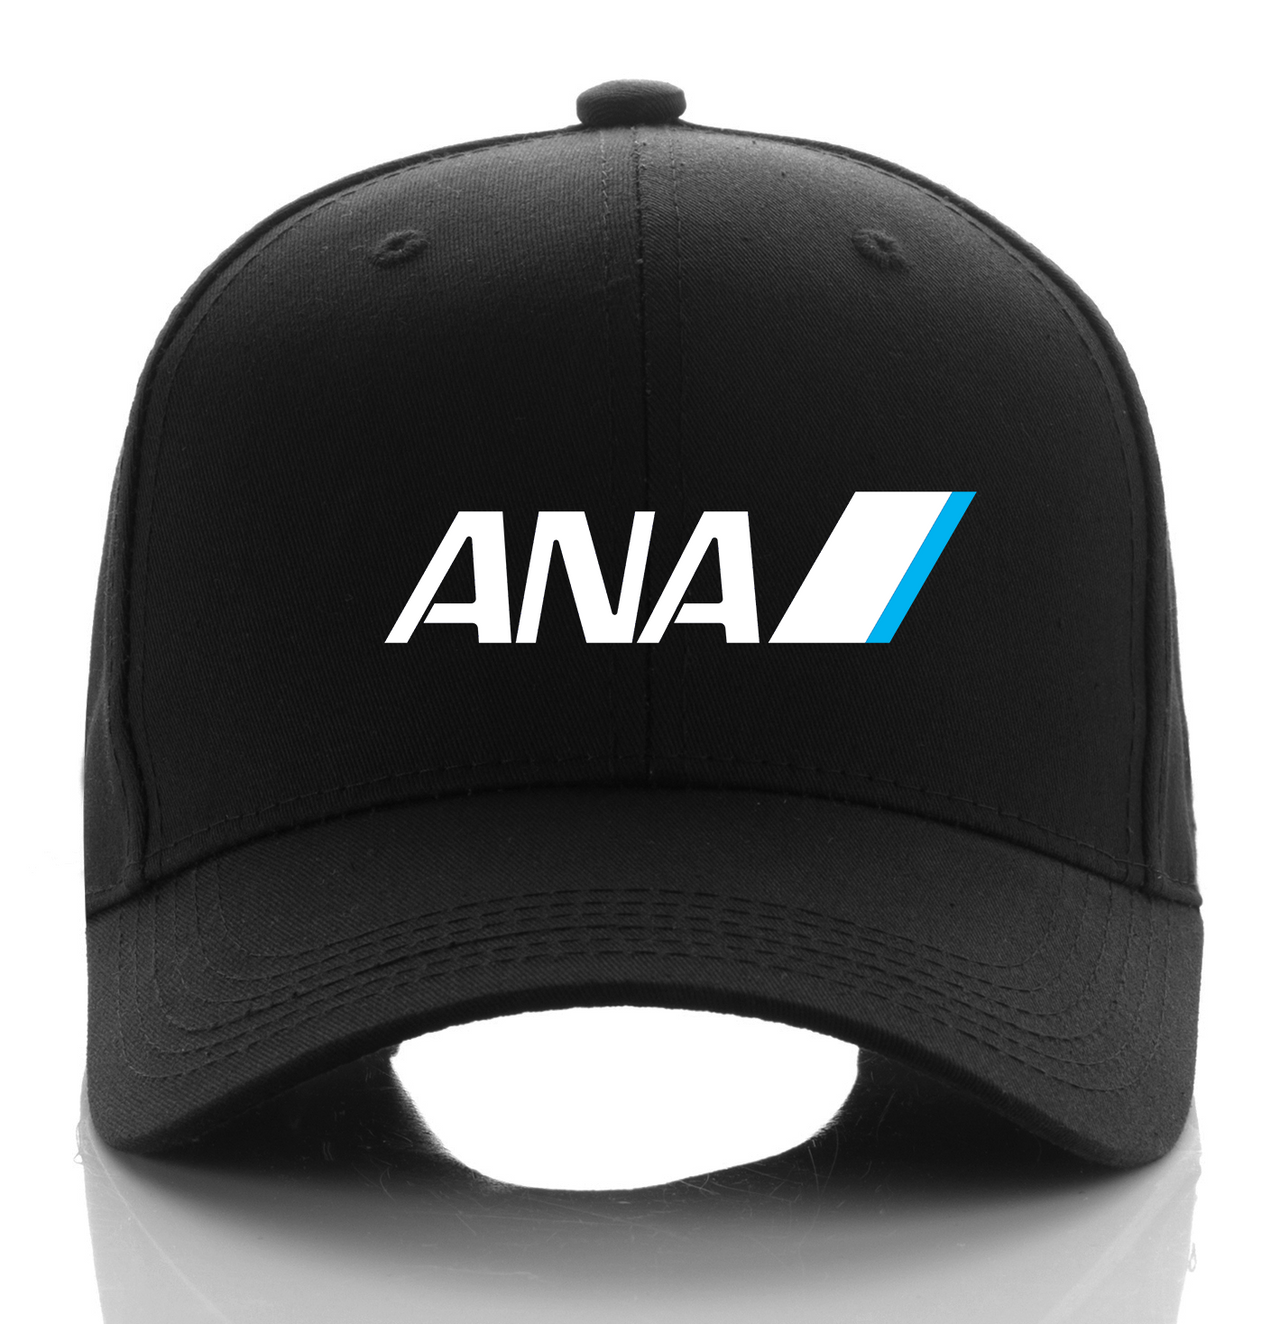 ANA AIRLINE DESIGNED CAP